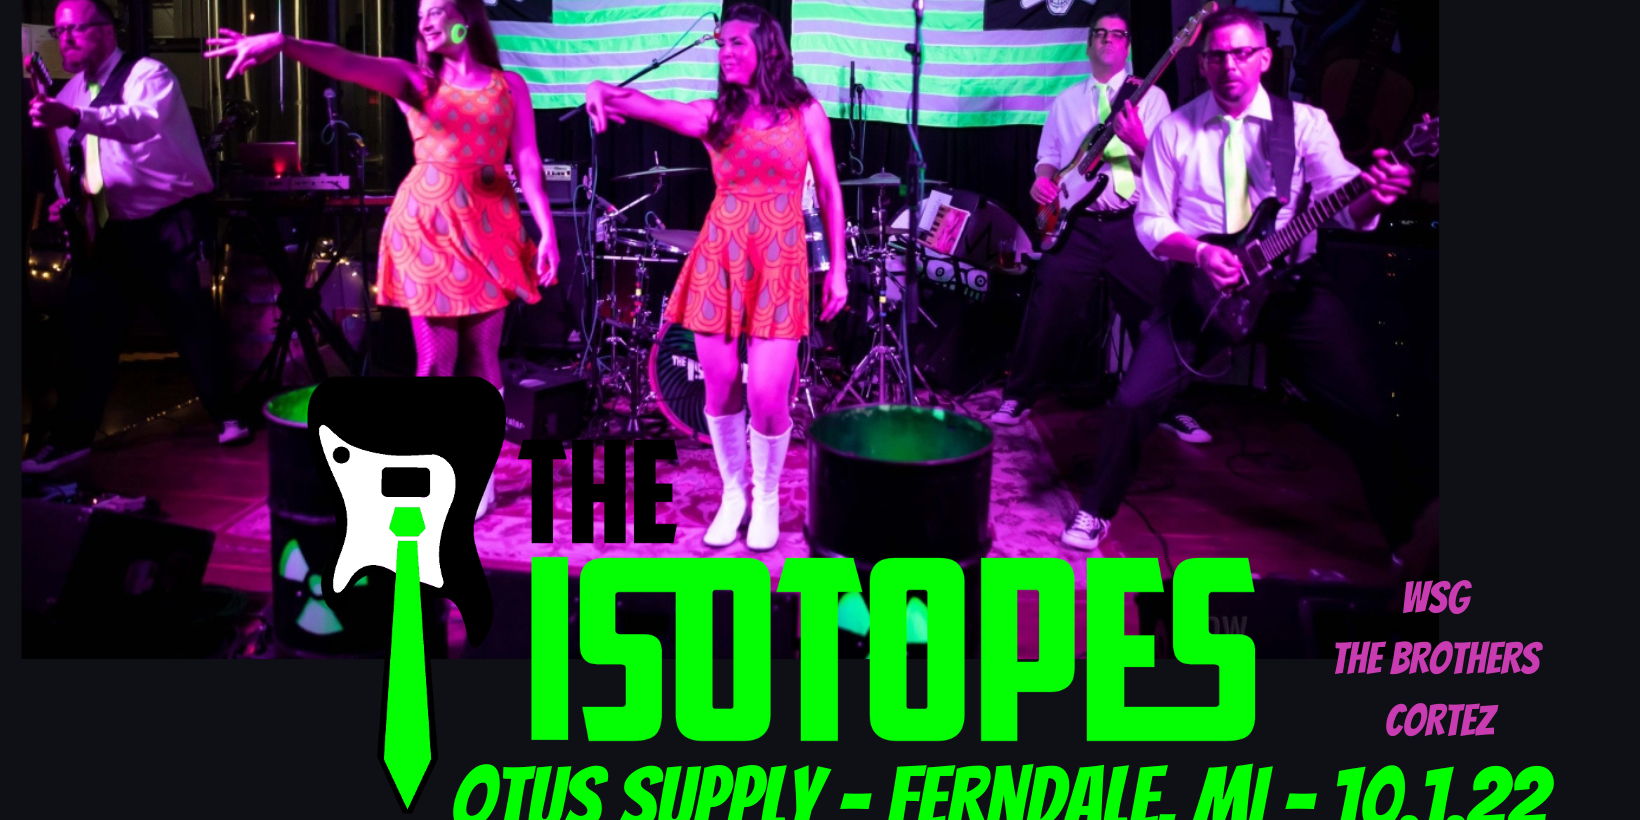 The Isotopes | Otus Supply | Ferndale, MI promotional image